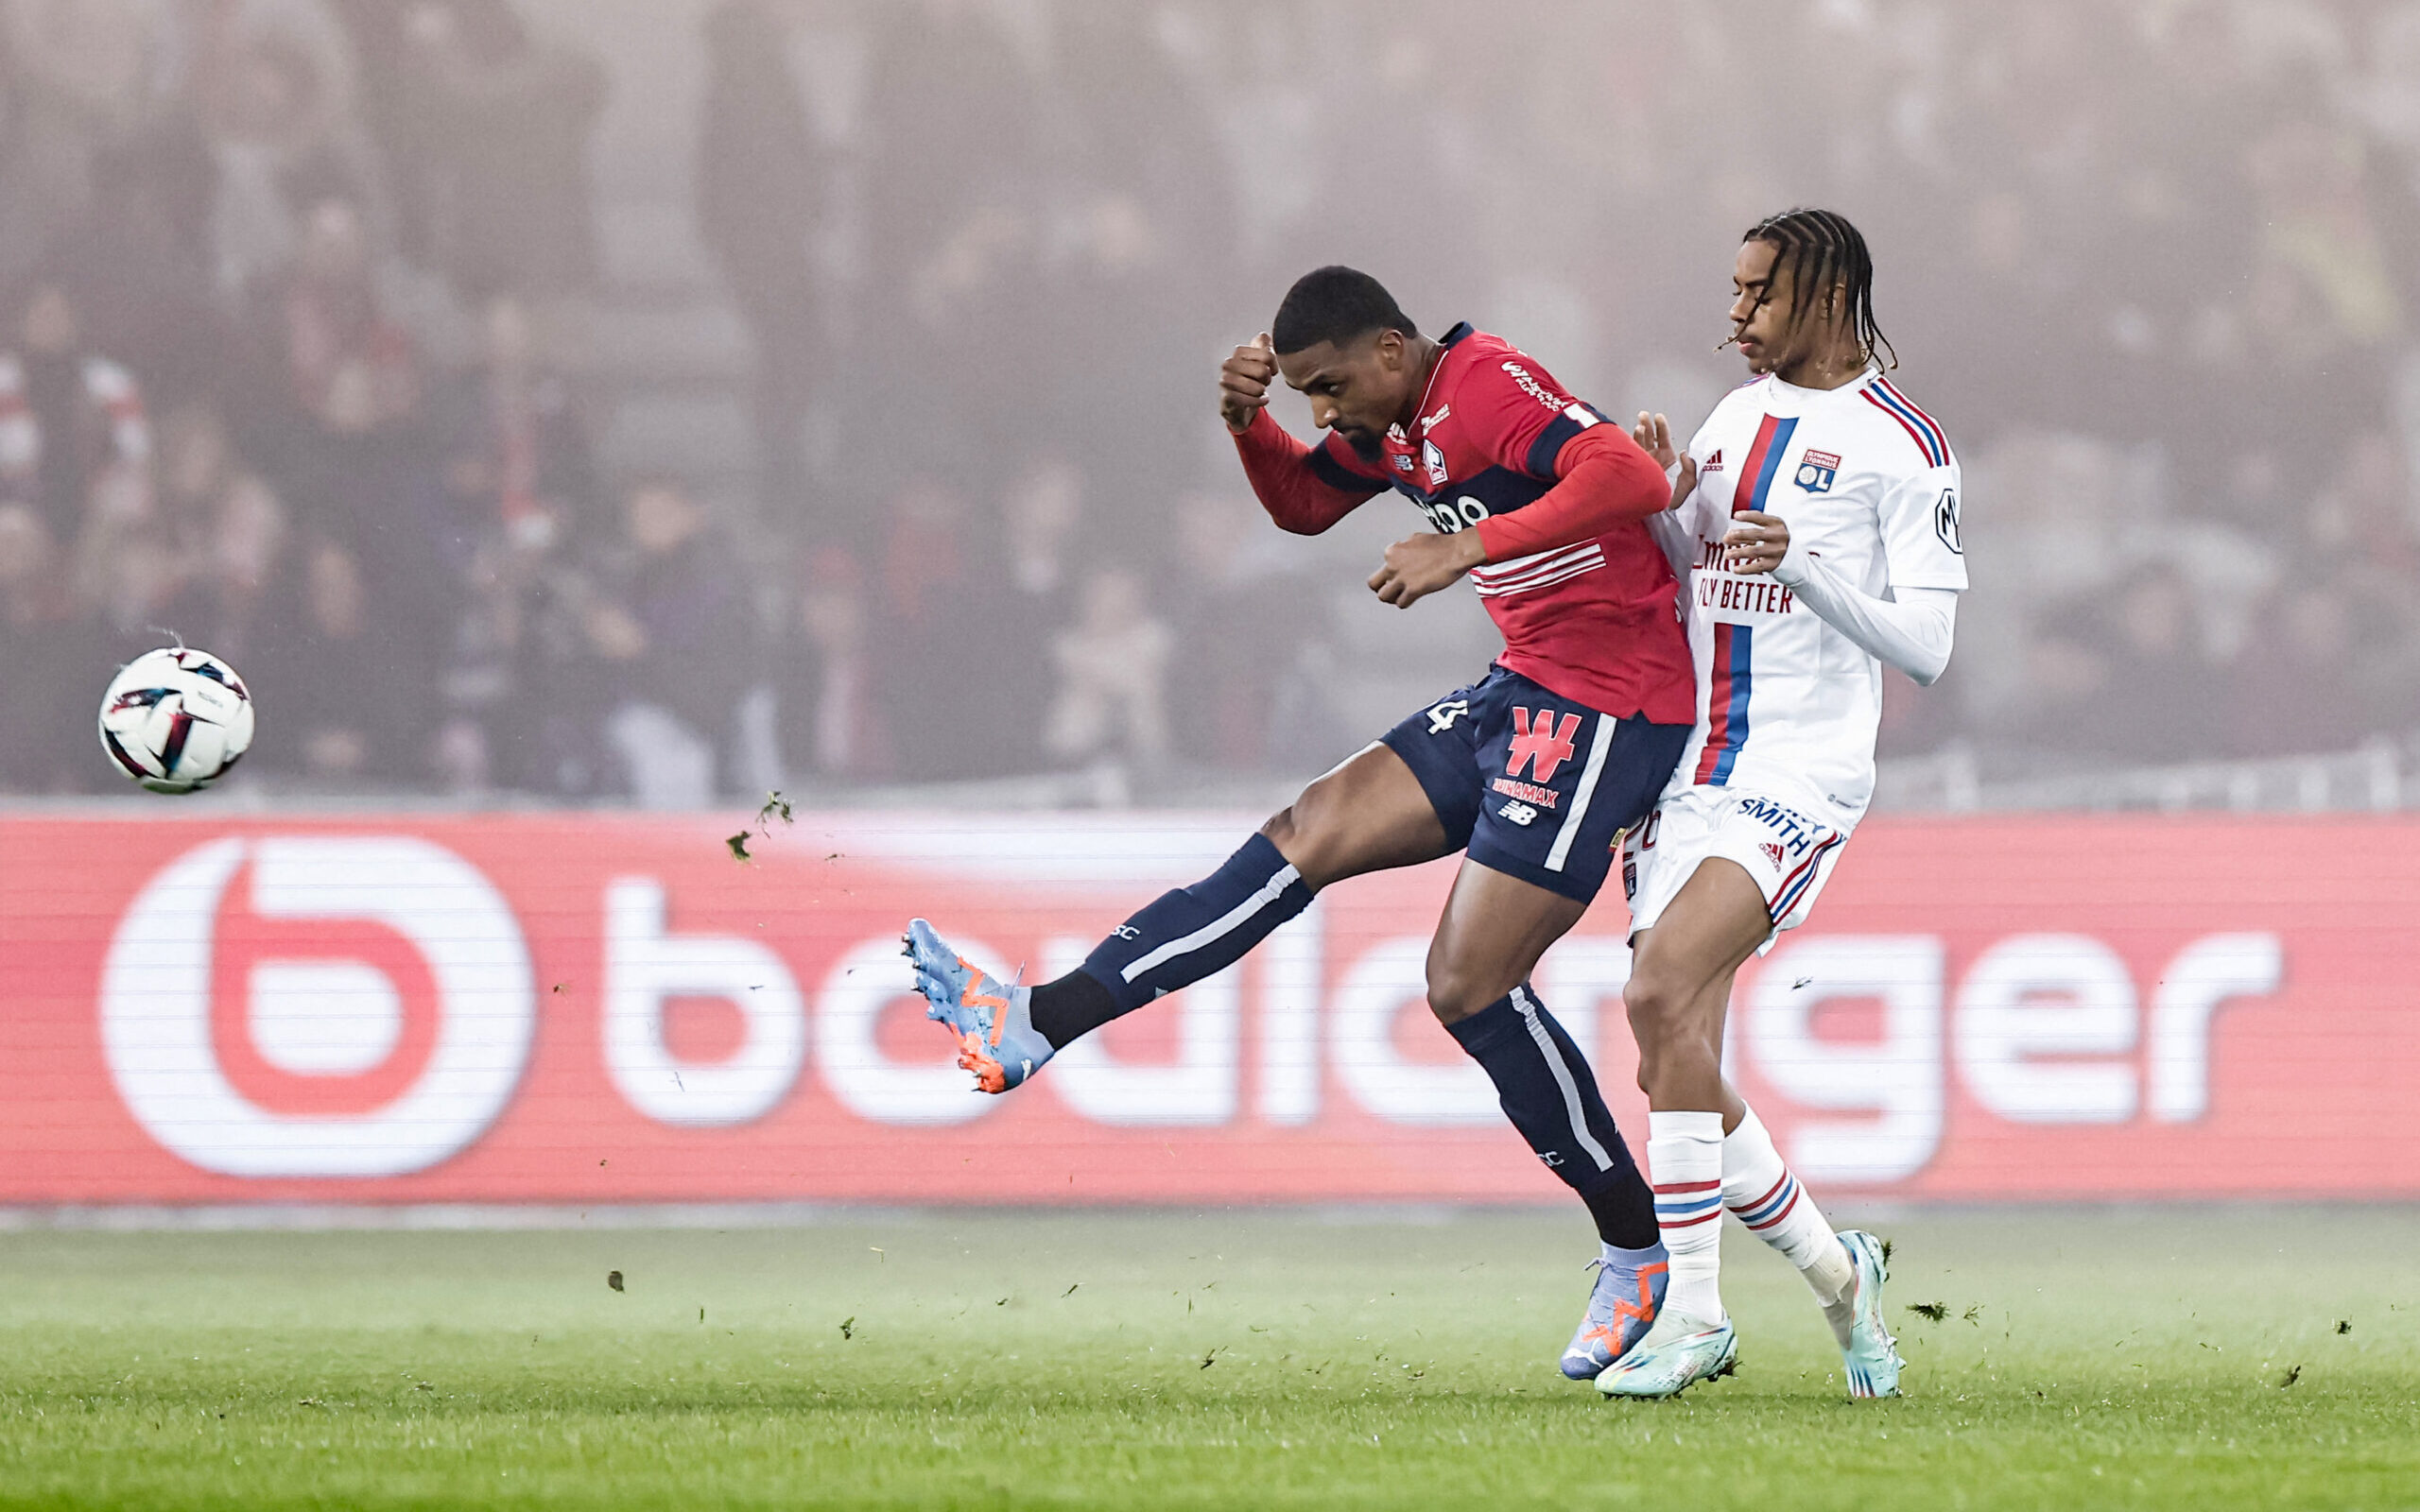 Ligue 1: PSG, Lens, OM le calendrier des prétendants au titre